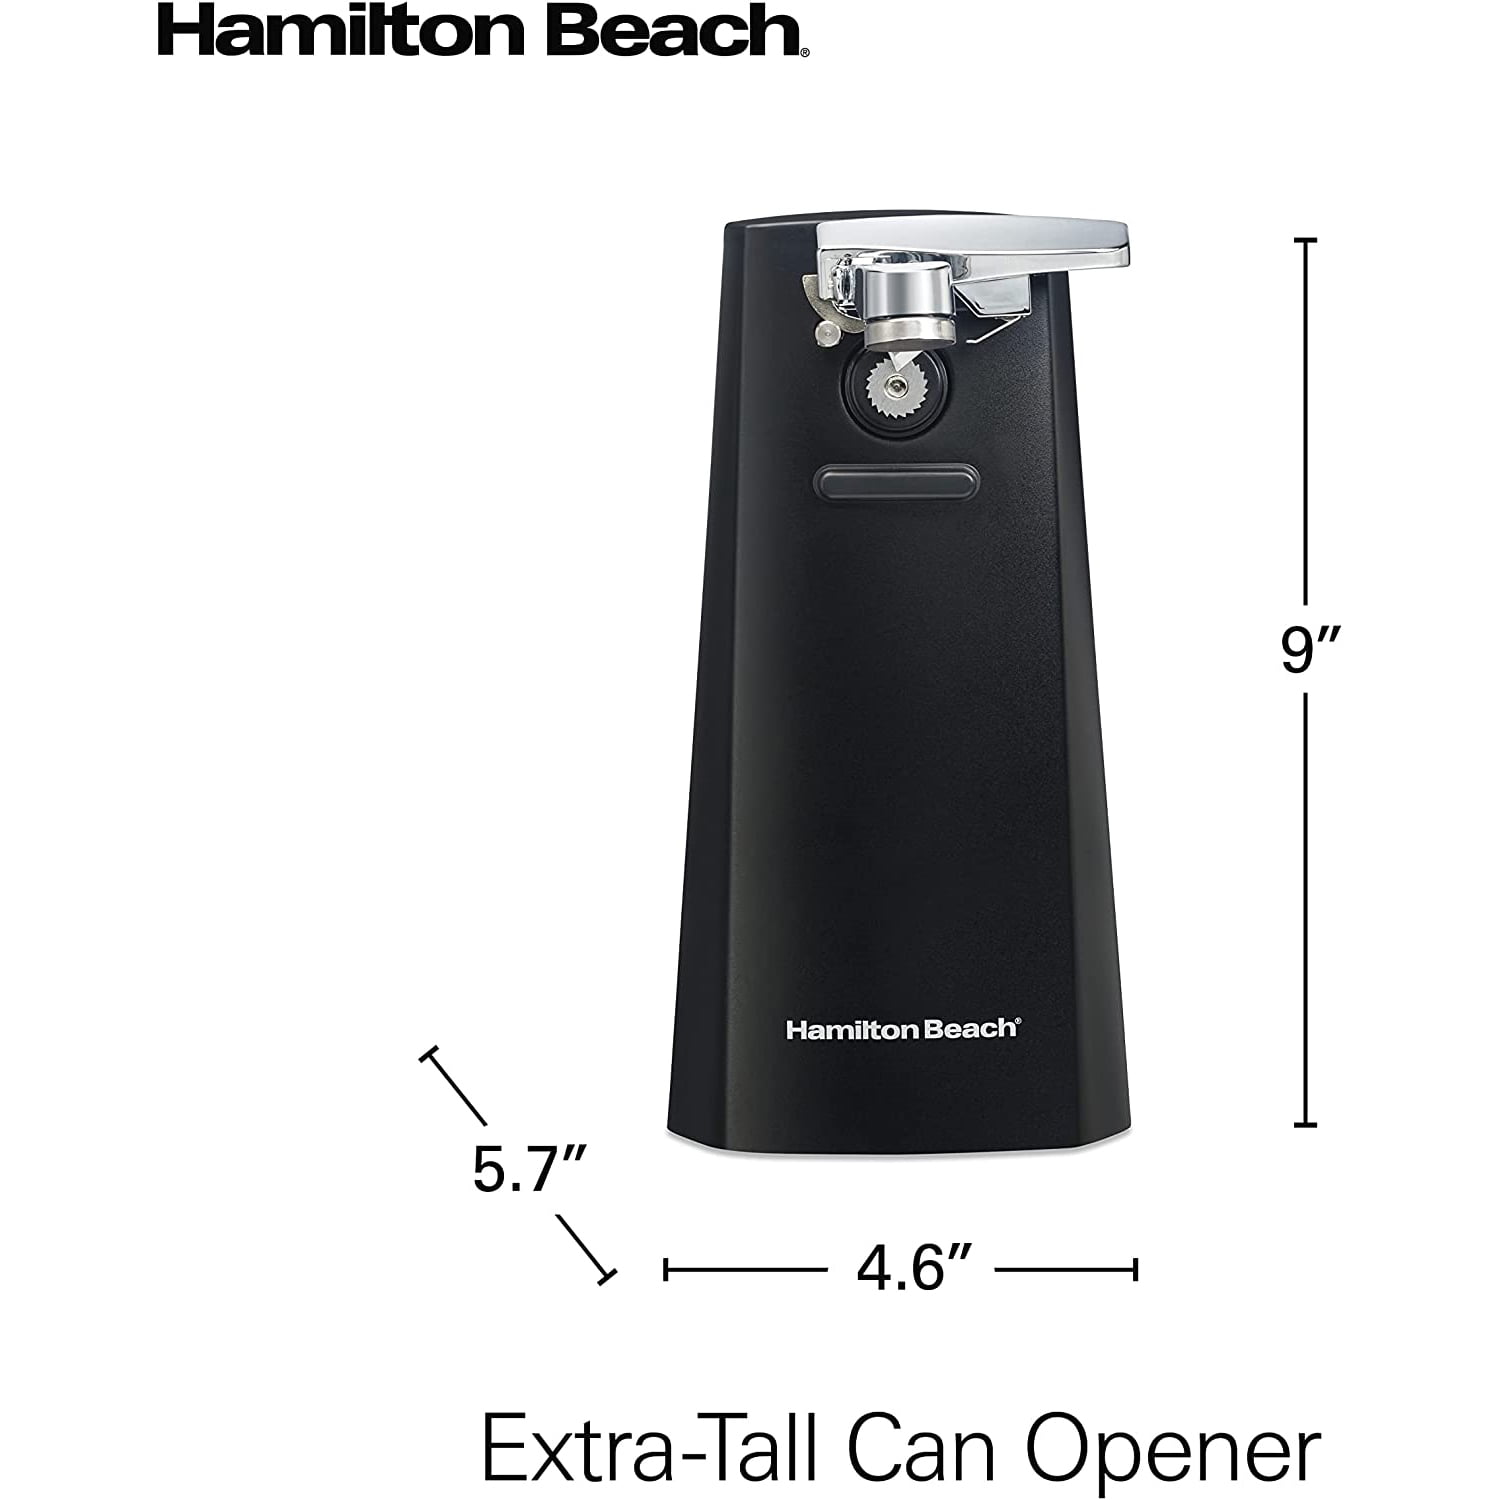 Hamilton Beach Ensemble Tall Can Opener, Red 